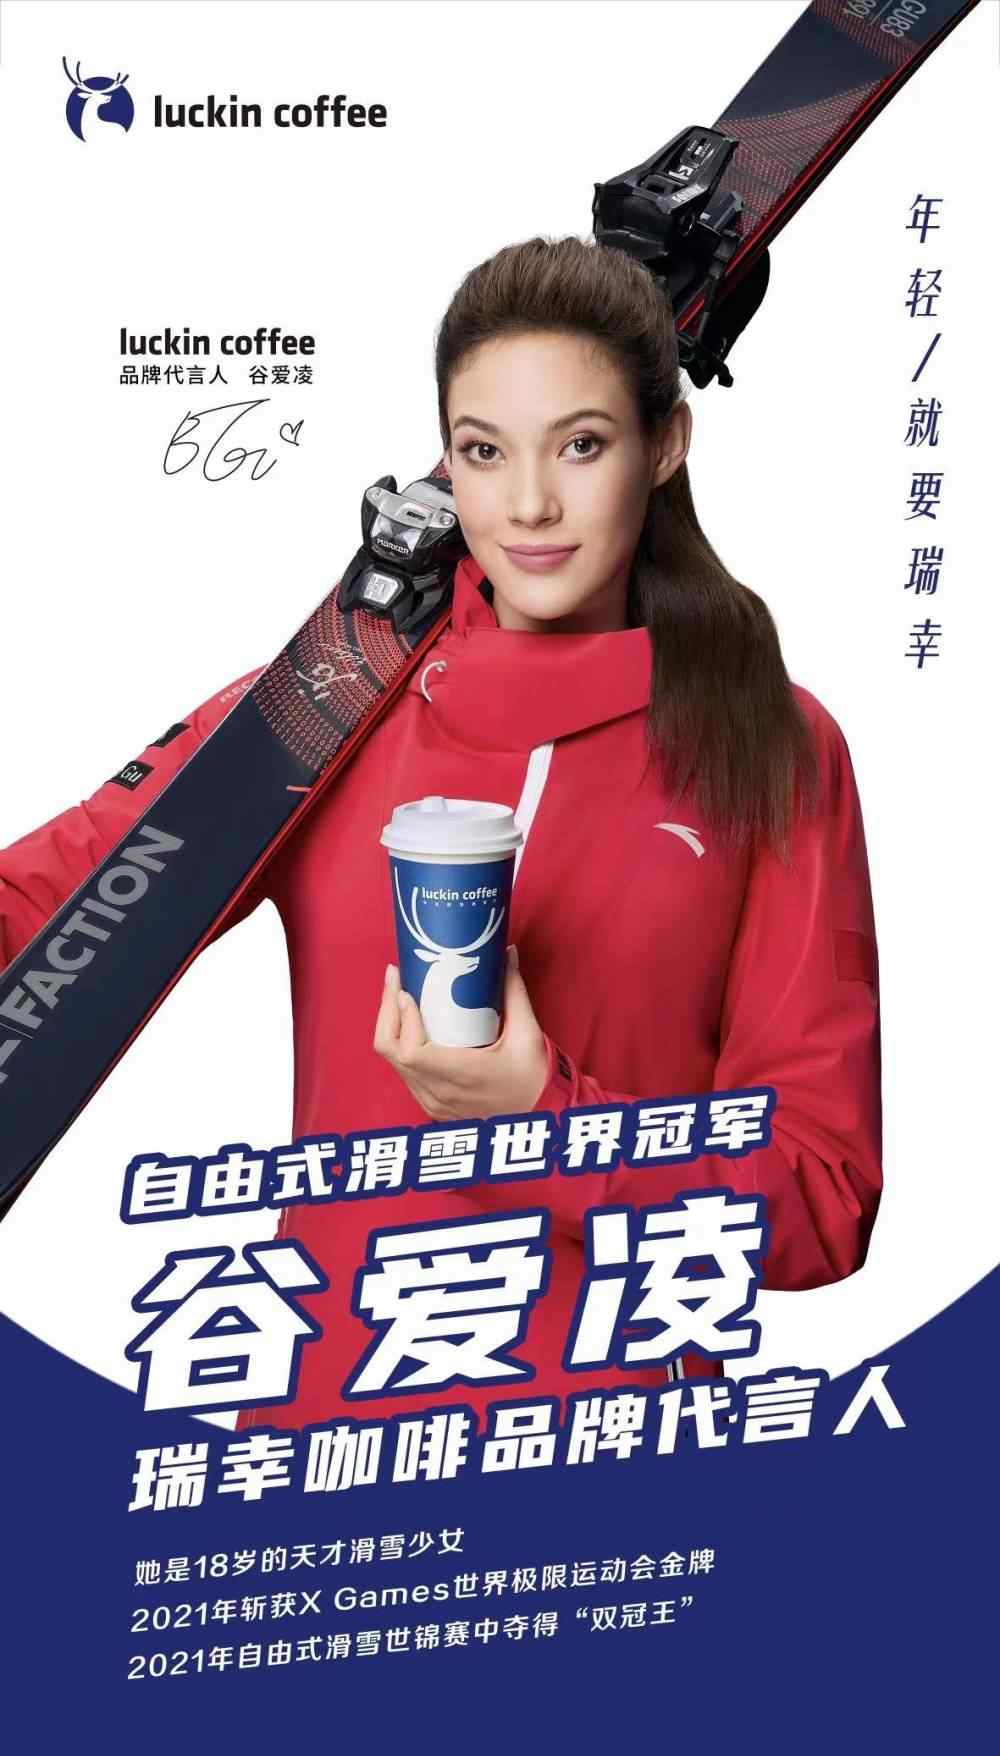 구아이링이 모델로 출연한 중국 루이싱 커피의 광고. 루이싱 커피 홈페이지 캡처